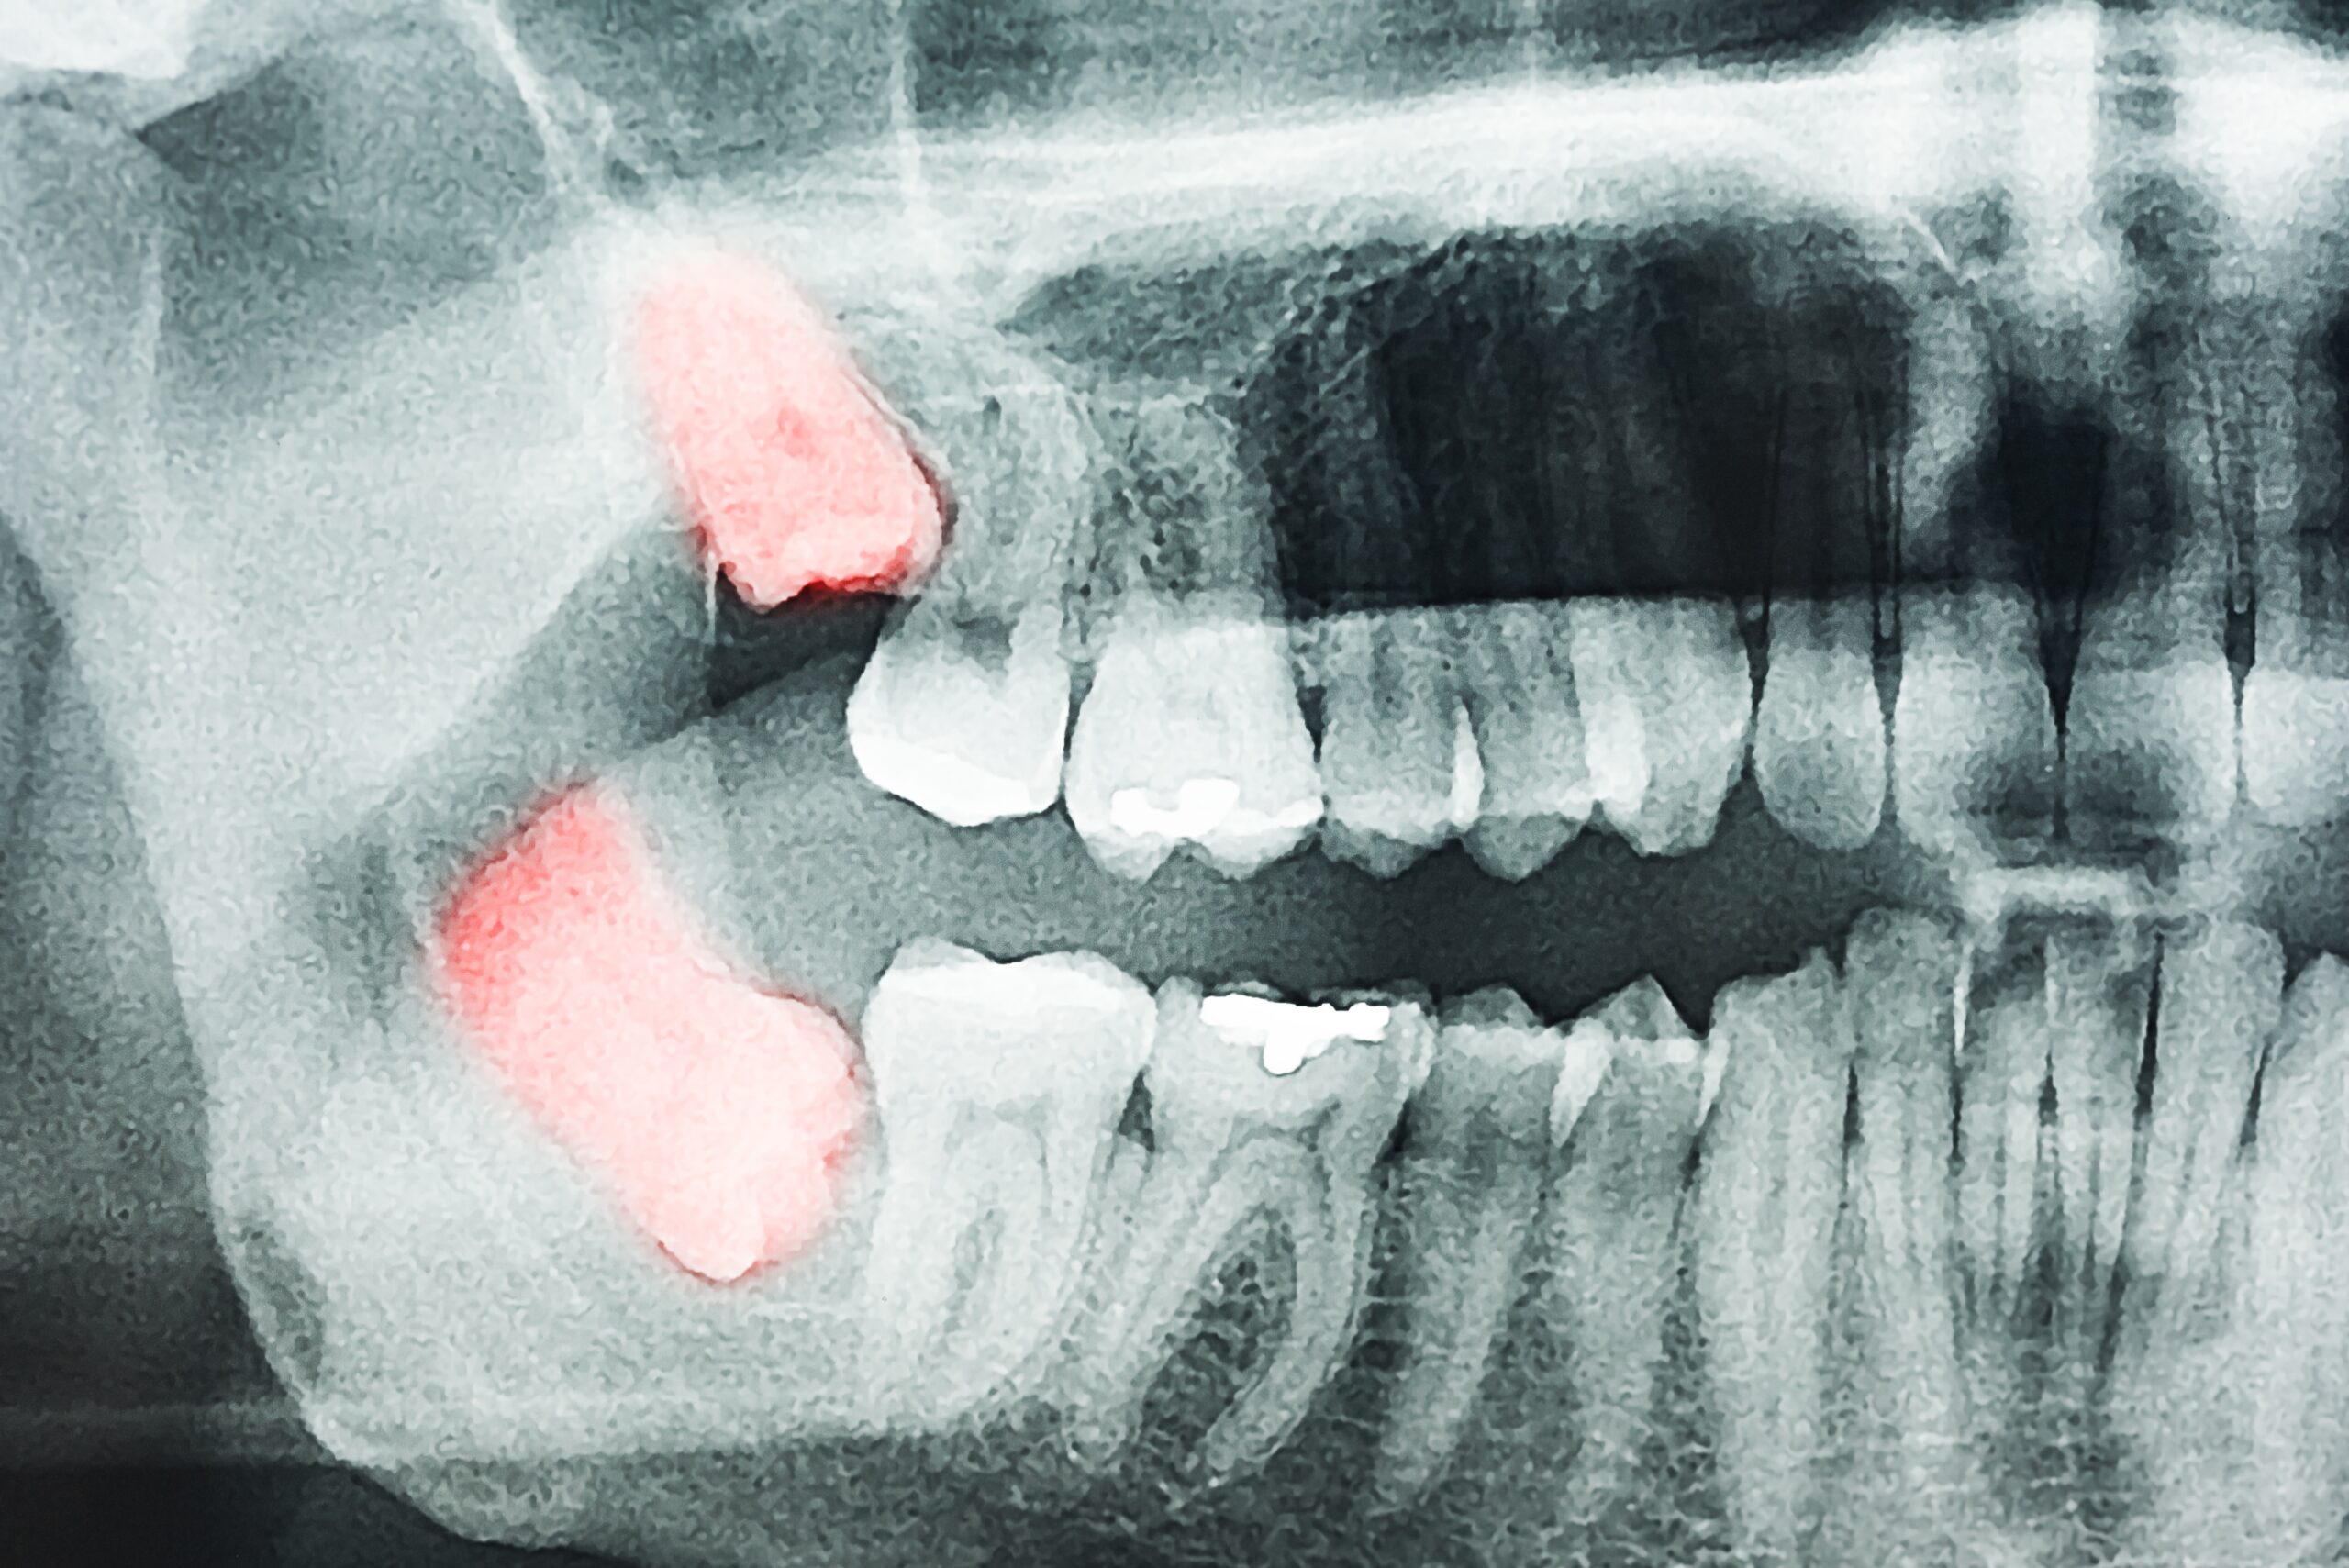 親知らずの生え方による様々なデメリット 八潮の歯医者なら子どもが楽しい歯医者さんlealea歯科 矯正歯科クリニック